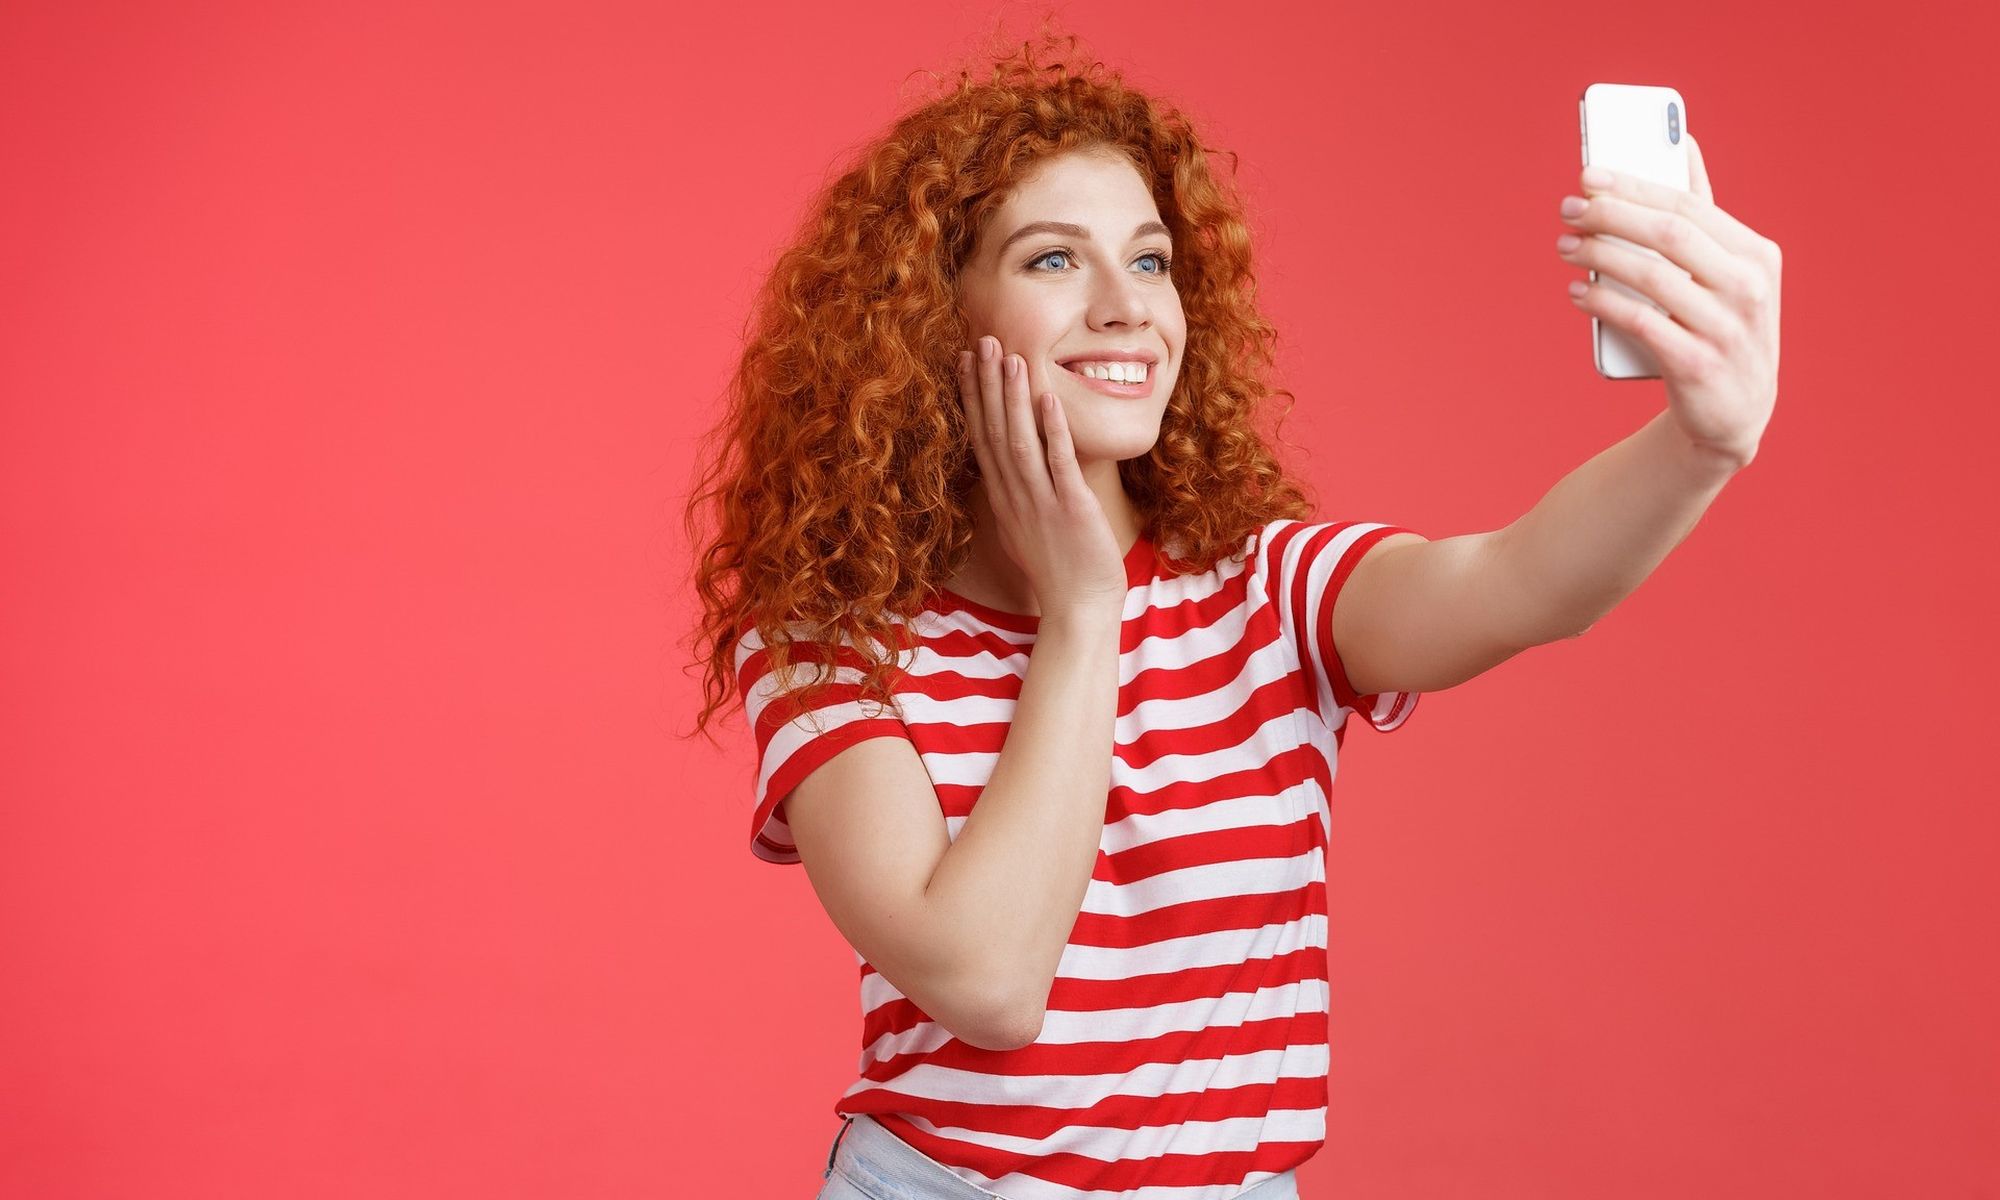 Eine Frau mit langen roten Locken und rot-weiß gestreiftem T-Shirt steht vor rotem Hintergrund und macht ein Selfie von sich